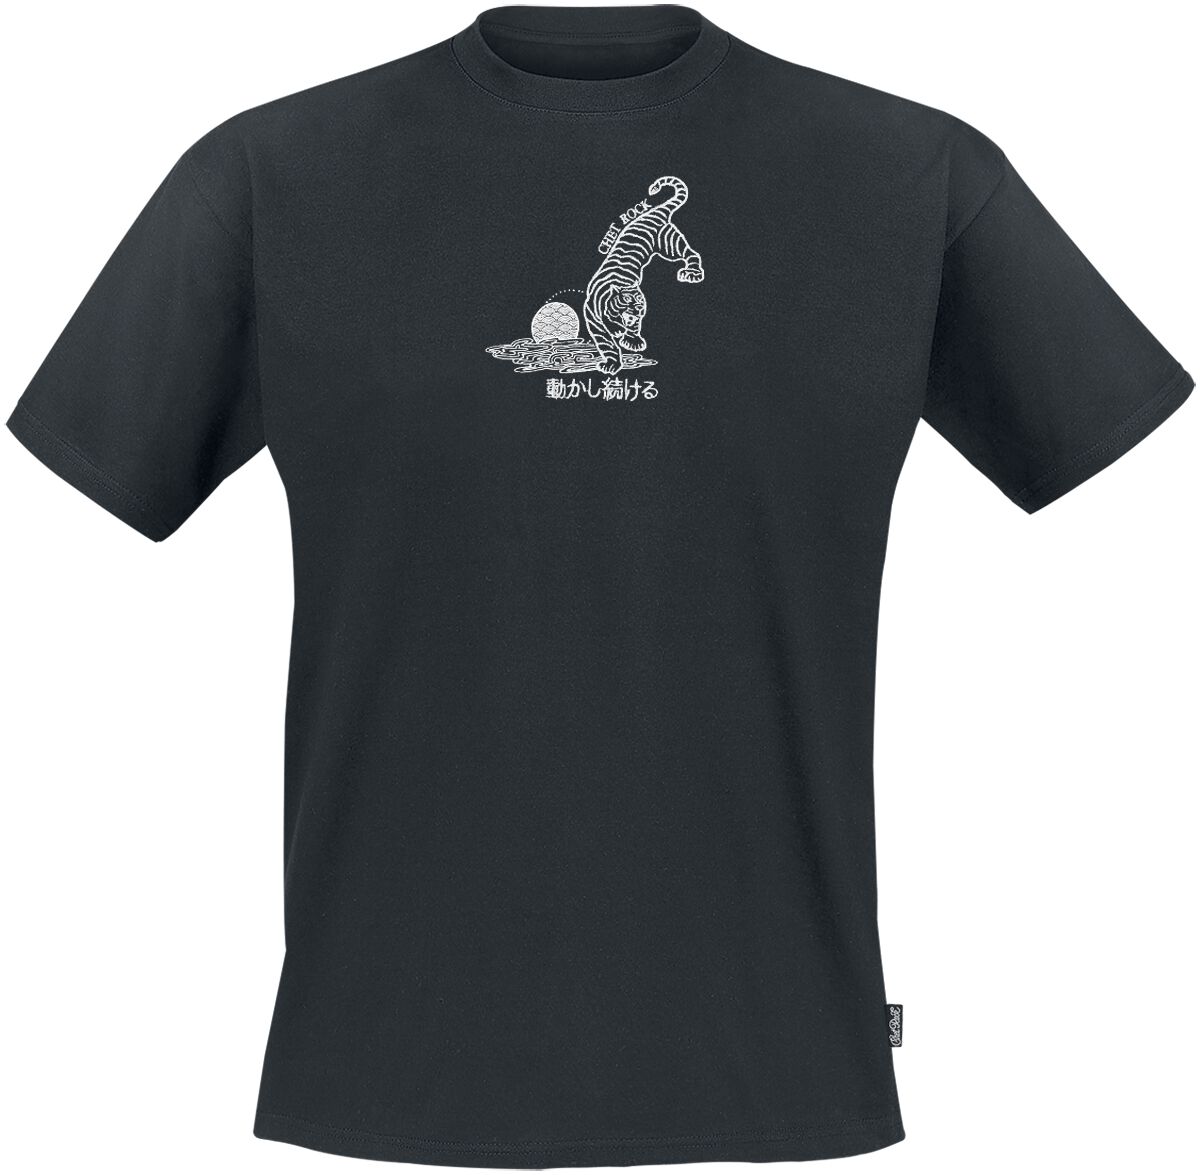 Chet Rock T-Shirt - Crouching Tiger - S bis XXL - für Männer - Größe S - schwarz